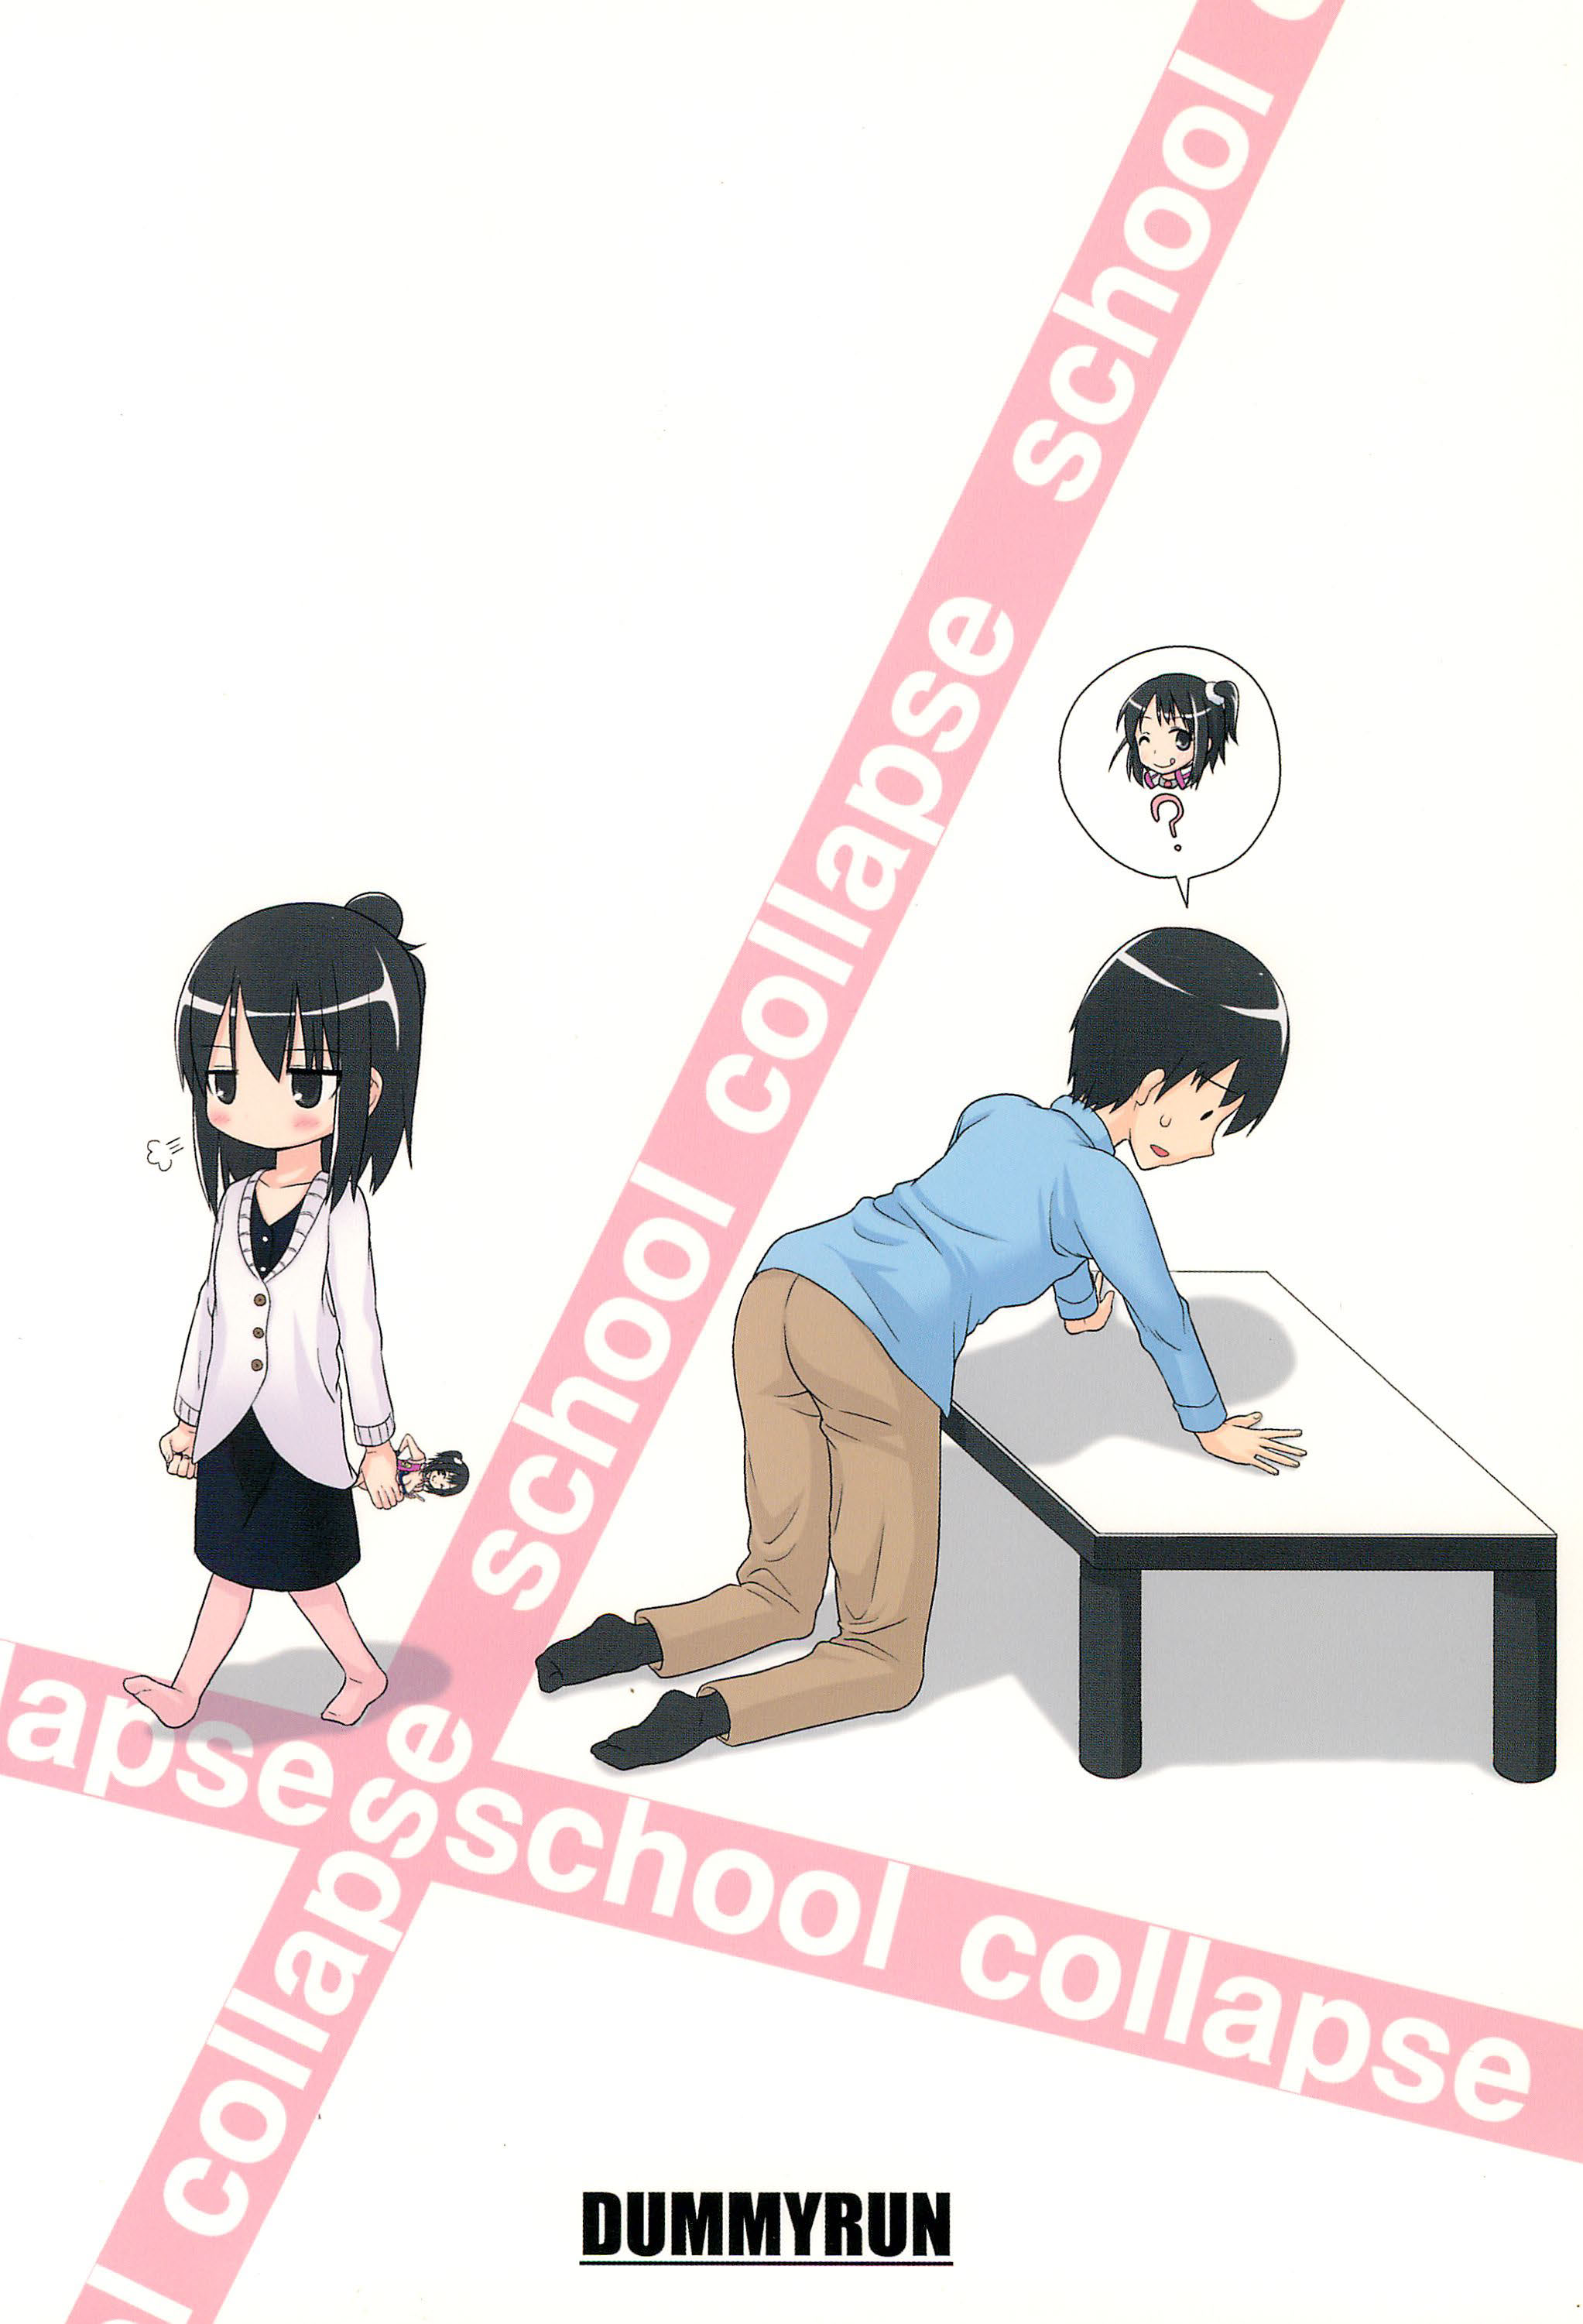 (ぷにケット20) [DUMMY RUN (百々巌)] school collapse (みつどもえ)